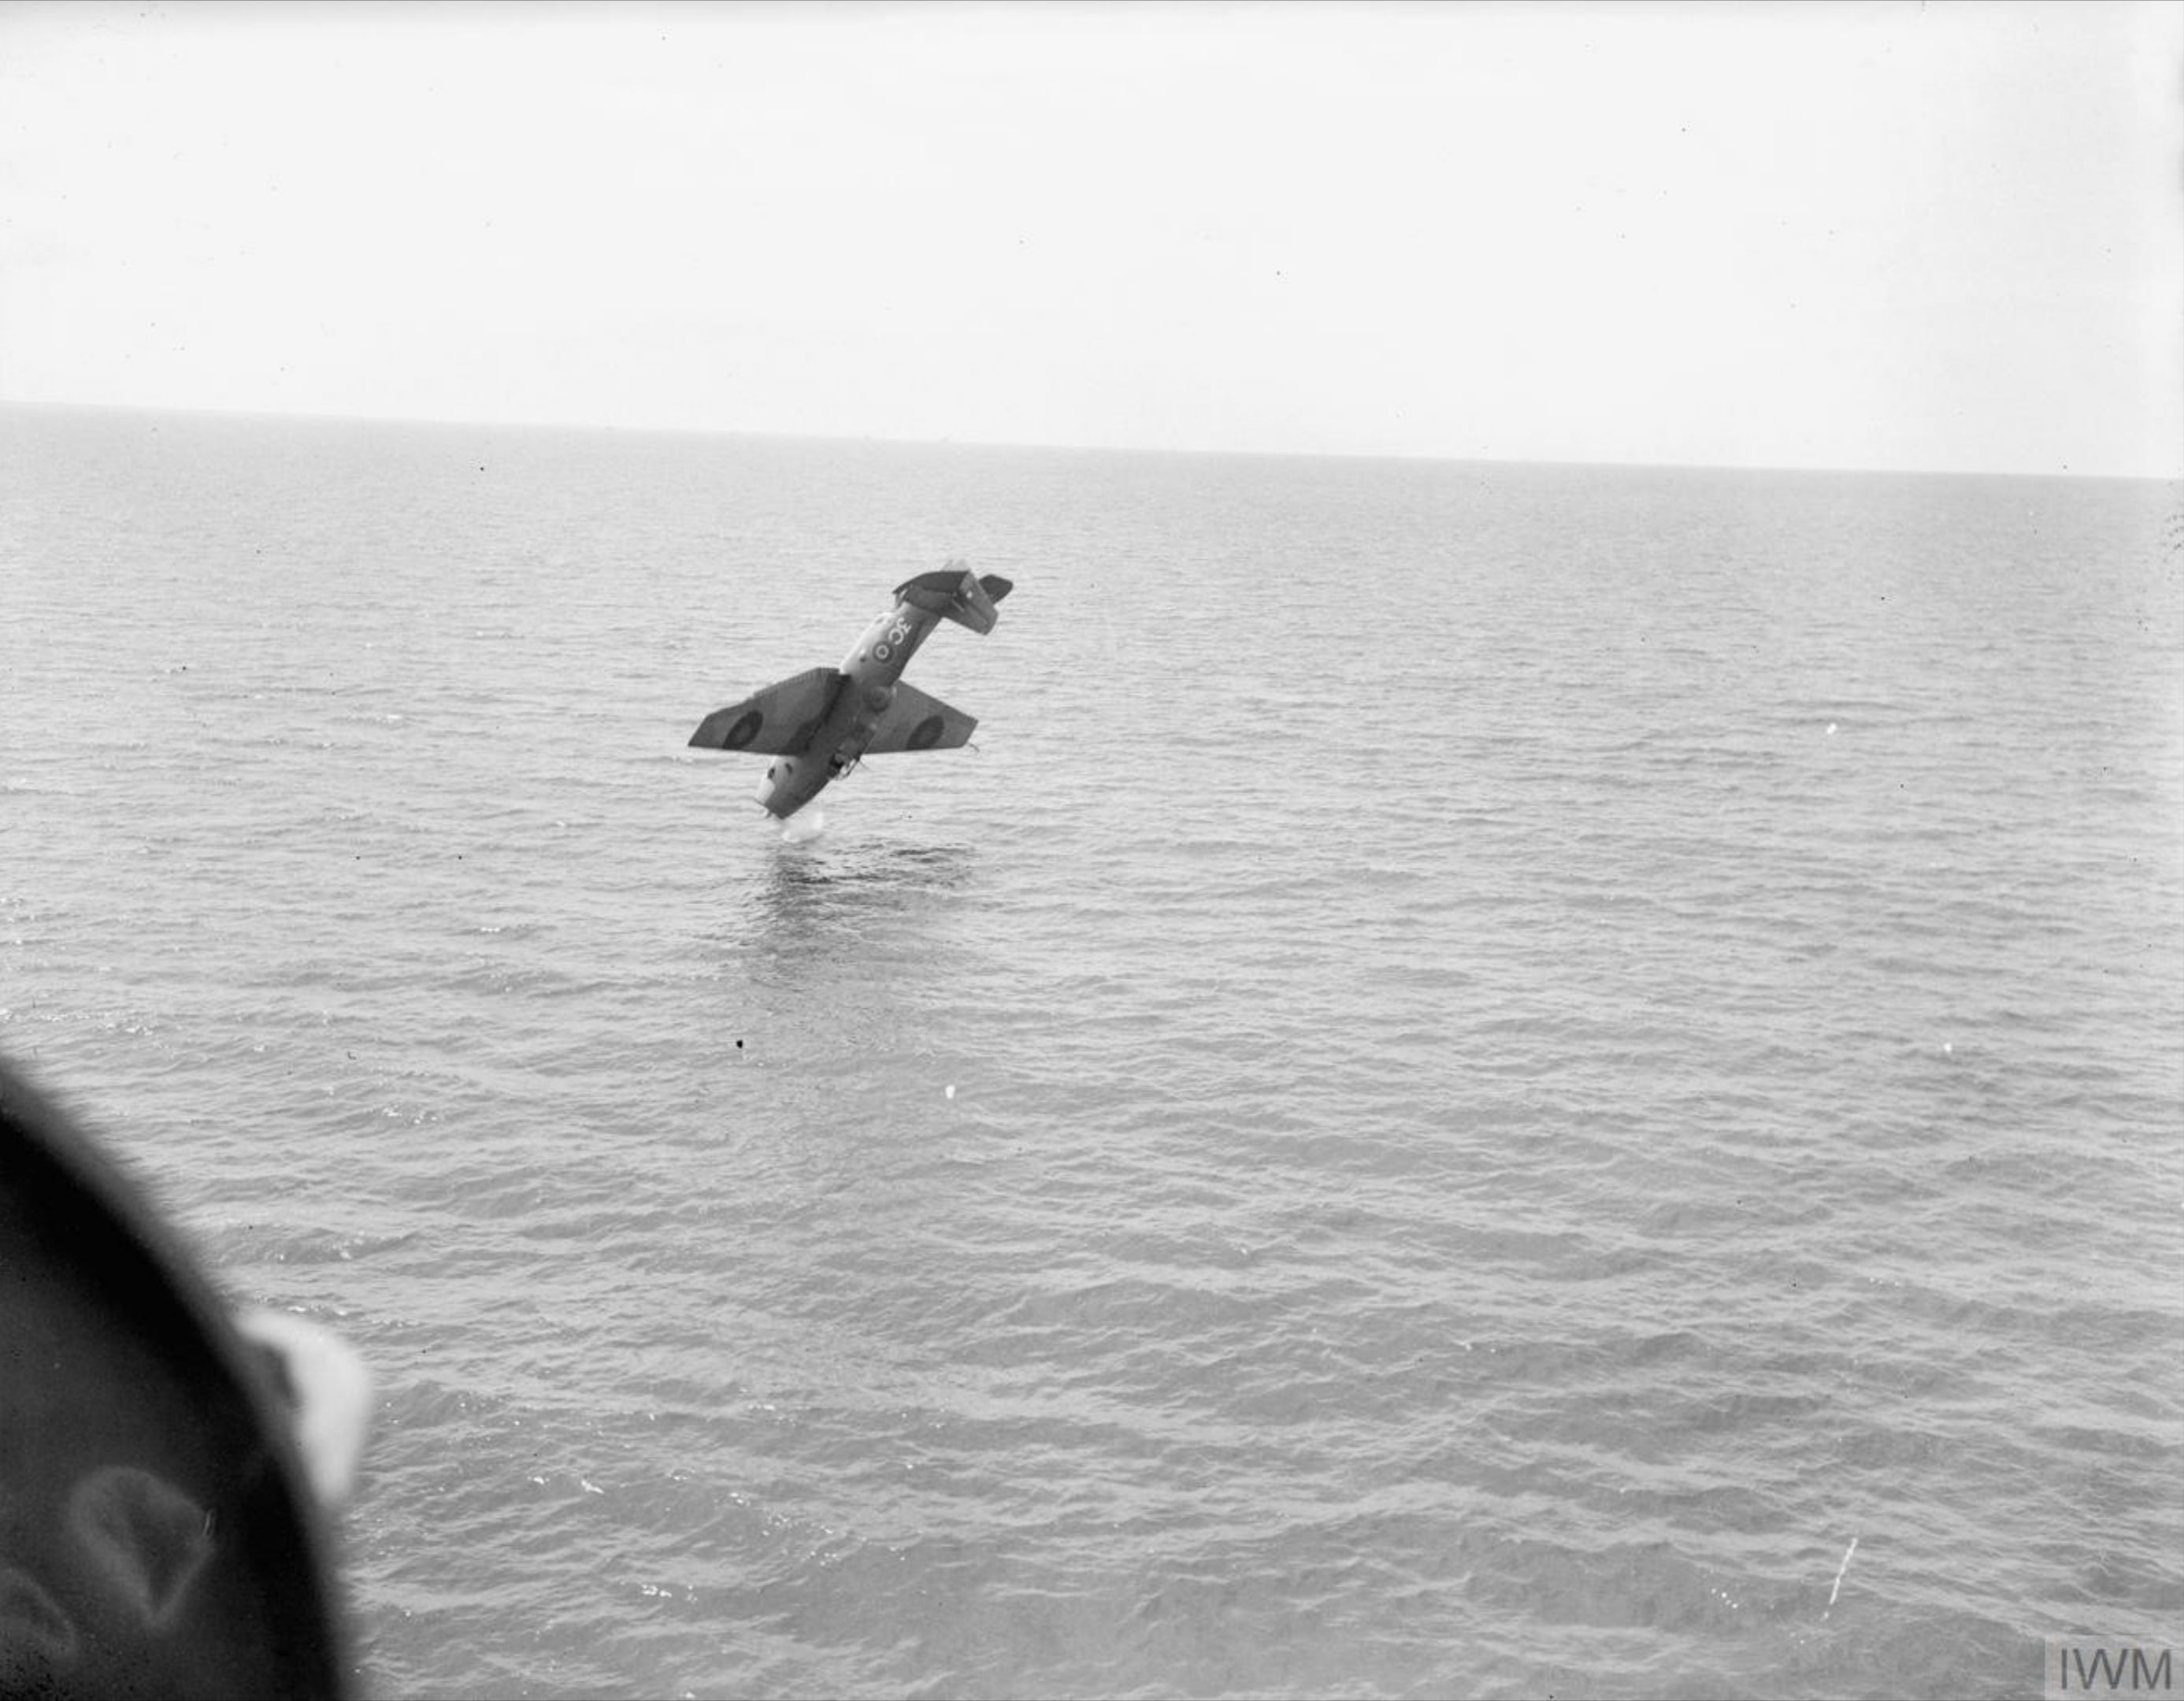 Fleet Air Arm 846NAS Avenger or Tarpon 3C landing mishap aboard HMS Ravager 28th Dec 1943 IWM A21292